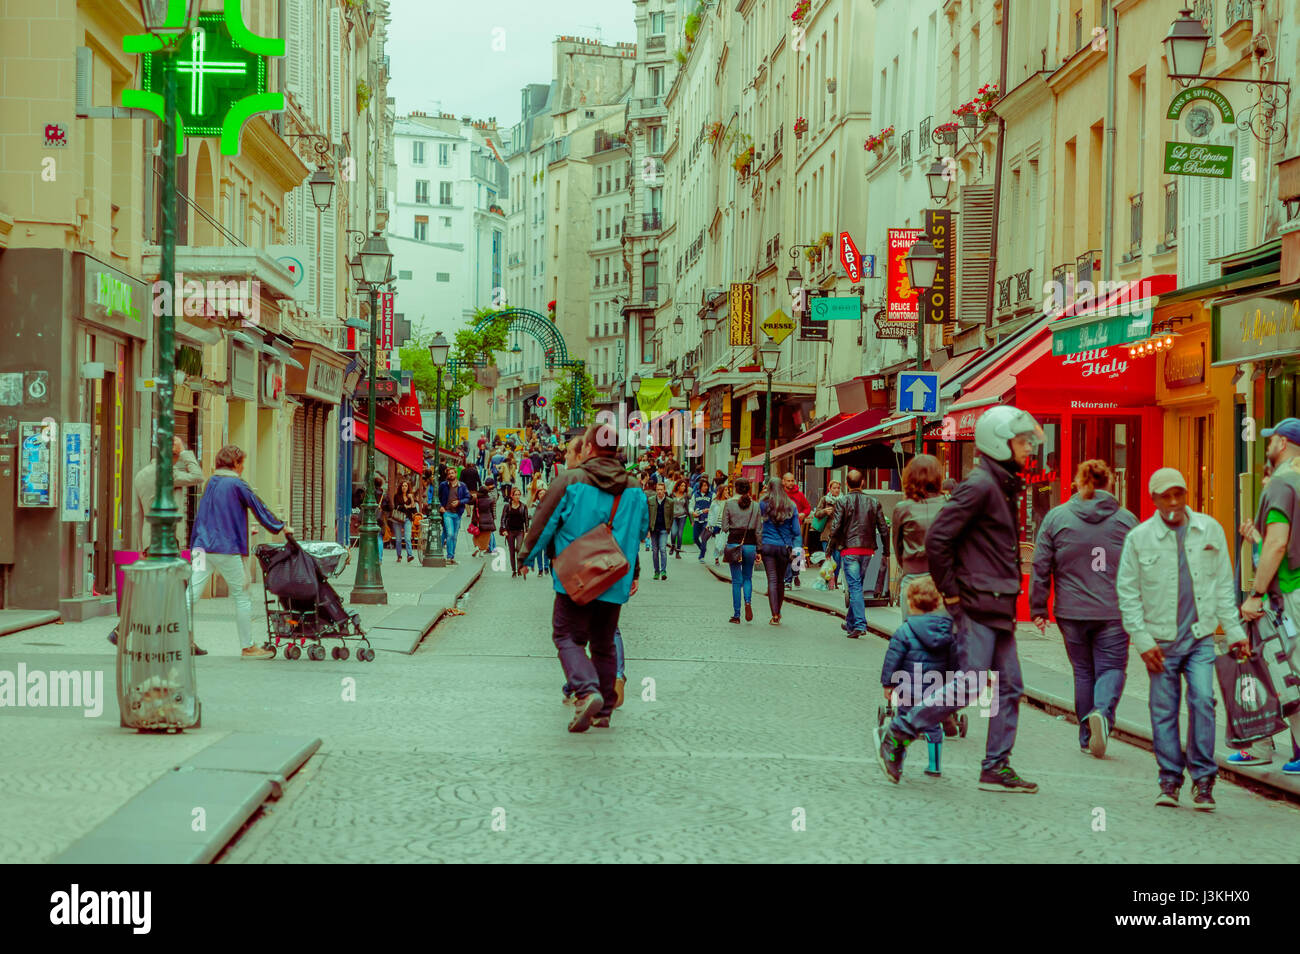 París, Francia el 1 de junio, 2015: acogedor y bello caminando por las calles de la ciudad histórica con encanto increíble, una arquitectura espectacular, vivid vagabundos Foto de stock